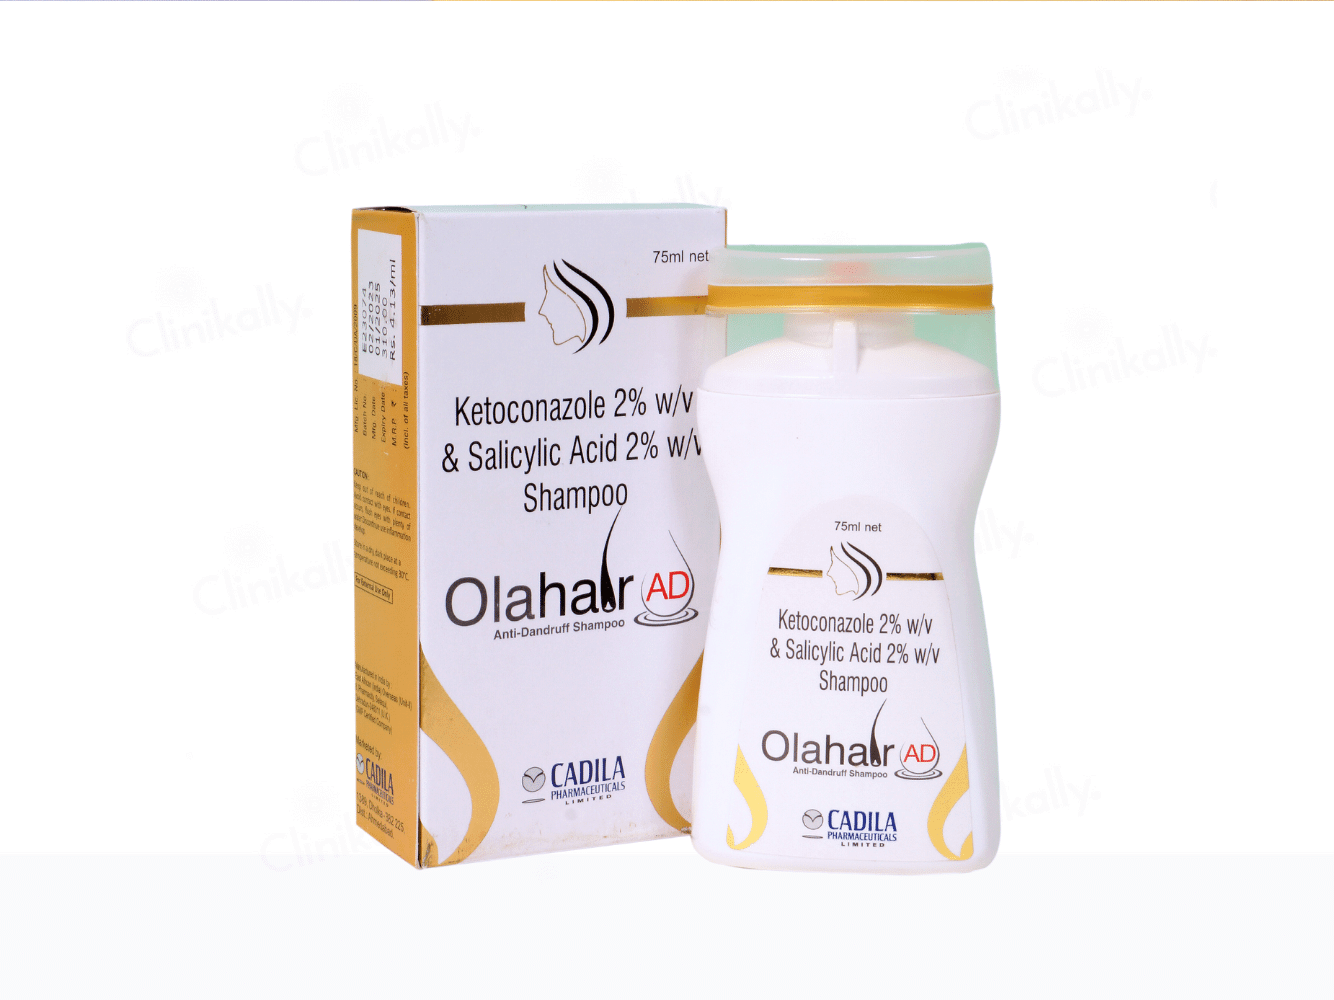 Olahair AD Anti-Dandruff Shampoo - Clinikally